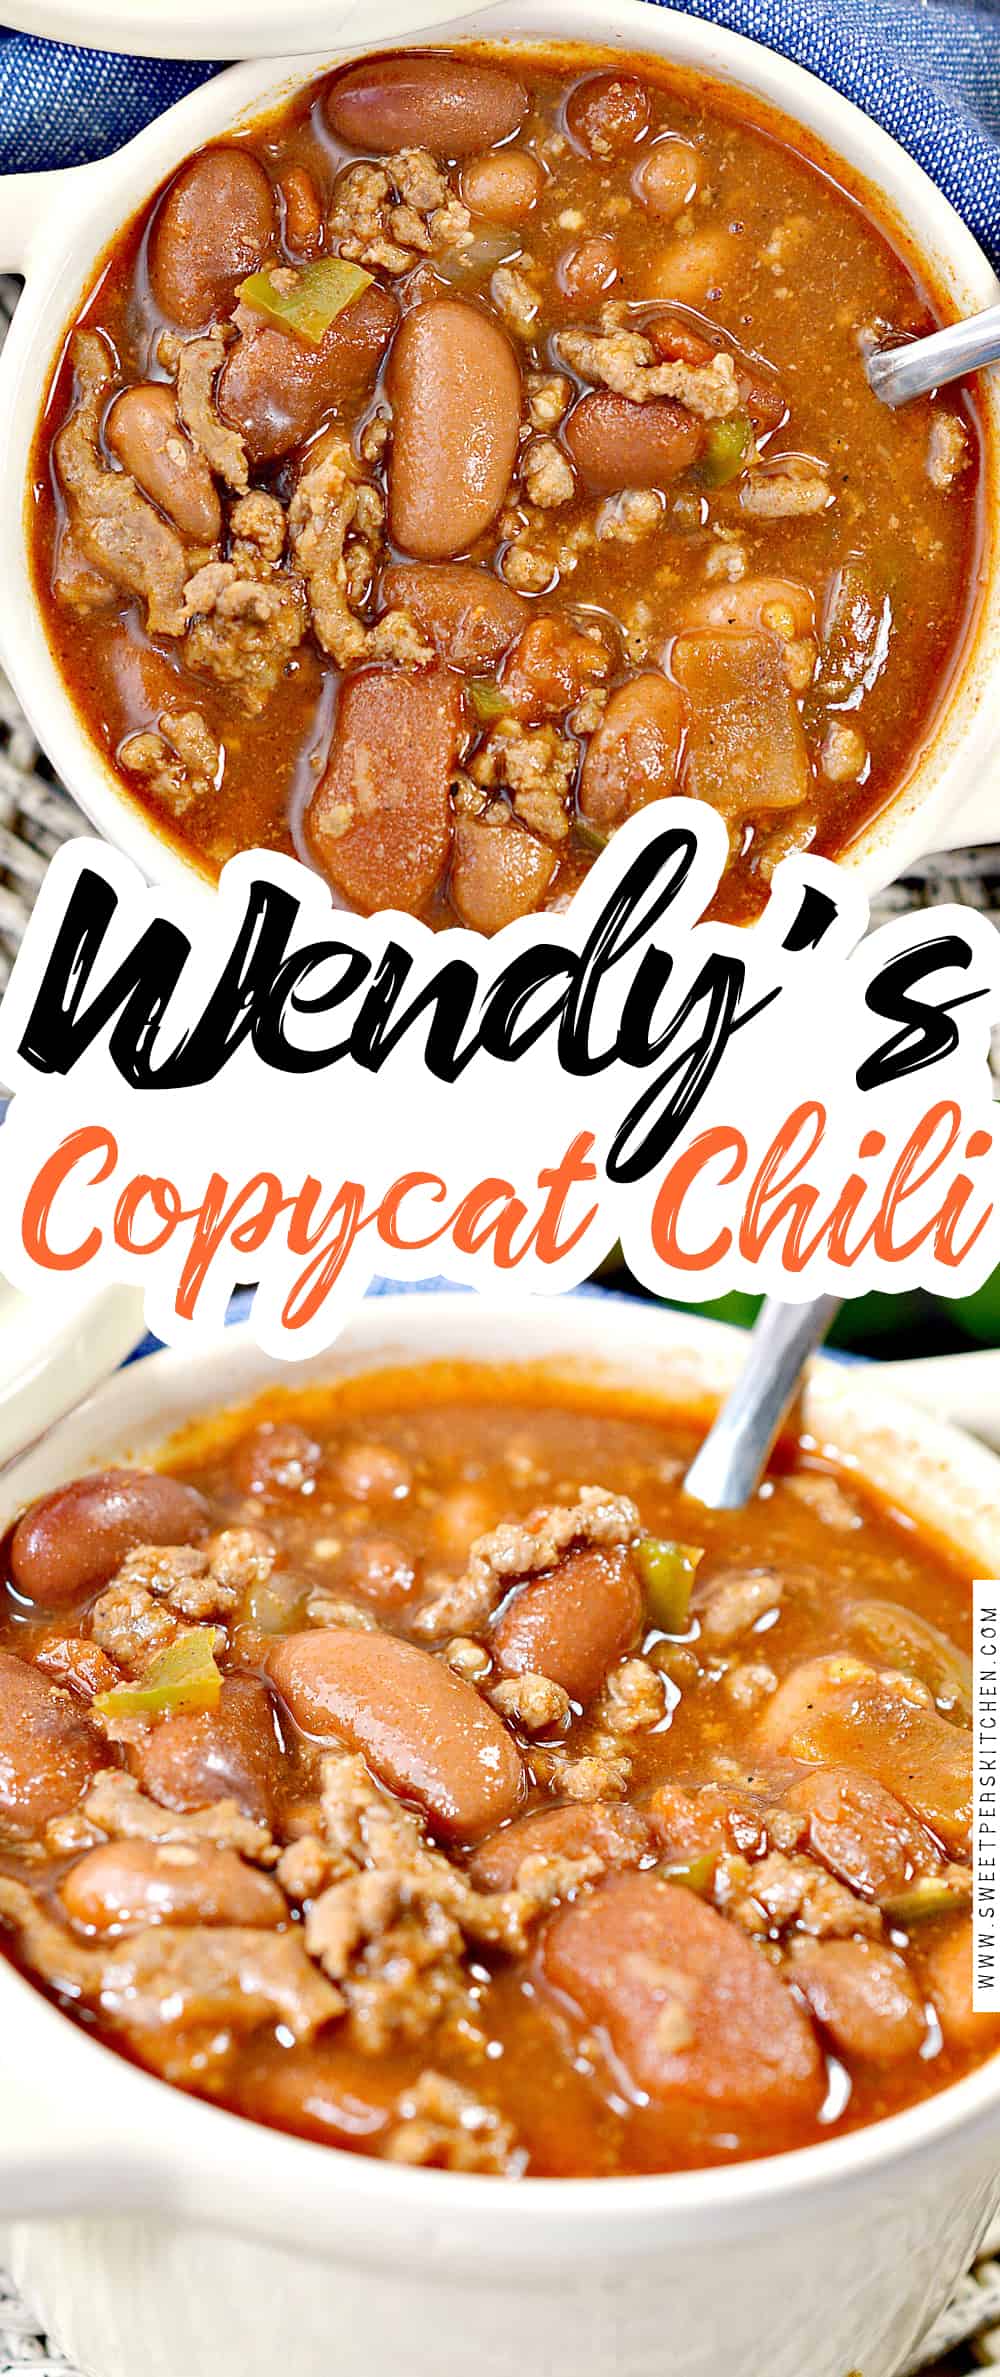 Wendy’s Copycat Chili